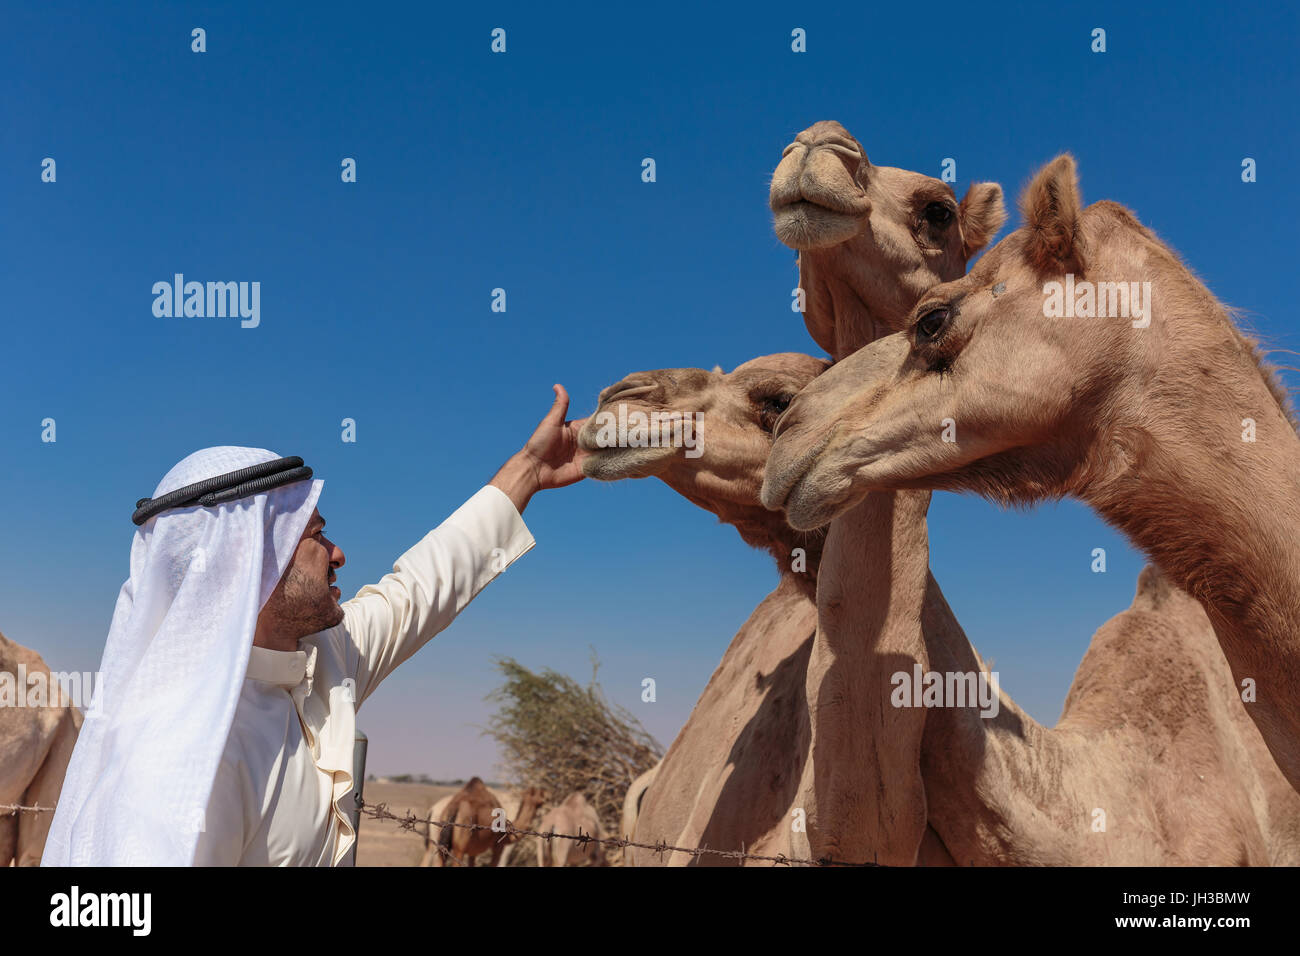 DUBAI, Vereinigte Arabische Emirate-NOVEMBER 12, 2013: Arabische Männer und Kamele auf dem Hof Stockfoto